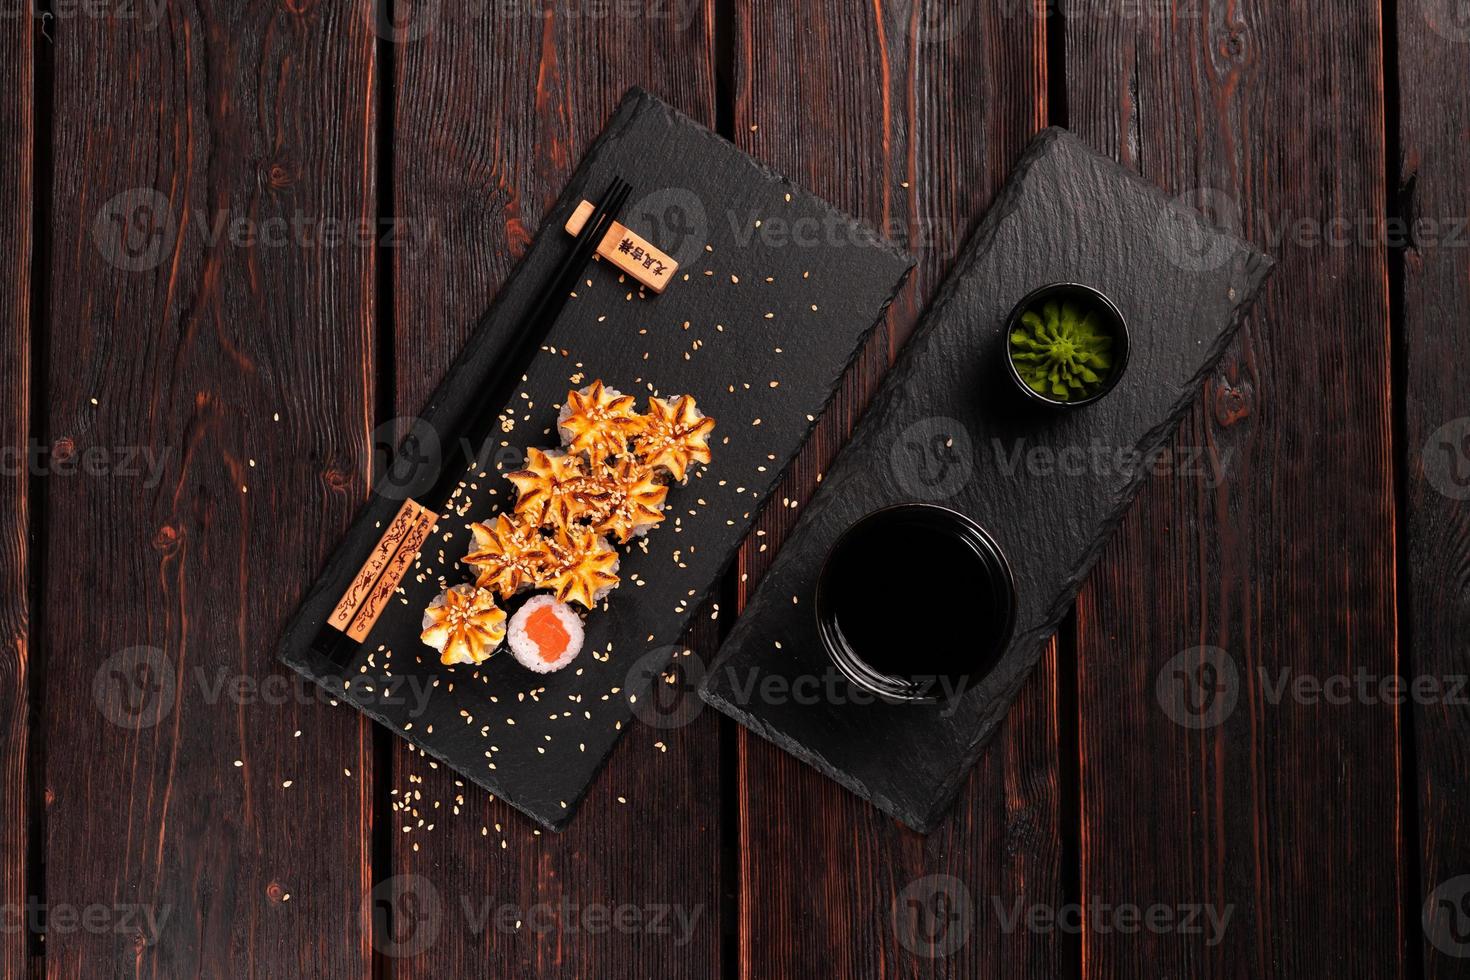 Japanisches heißes Maki-Rollen-Sushi mit Lachs-Draufsicht - asiatisches Lebensmittelkonzept foto